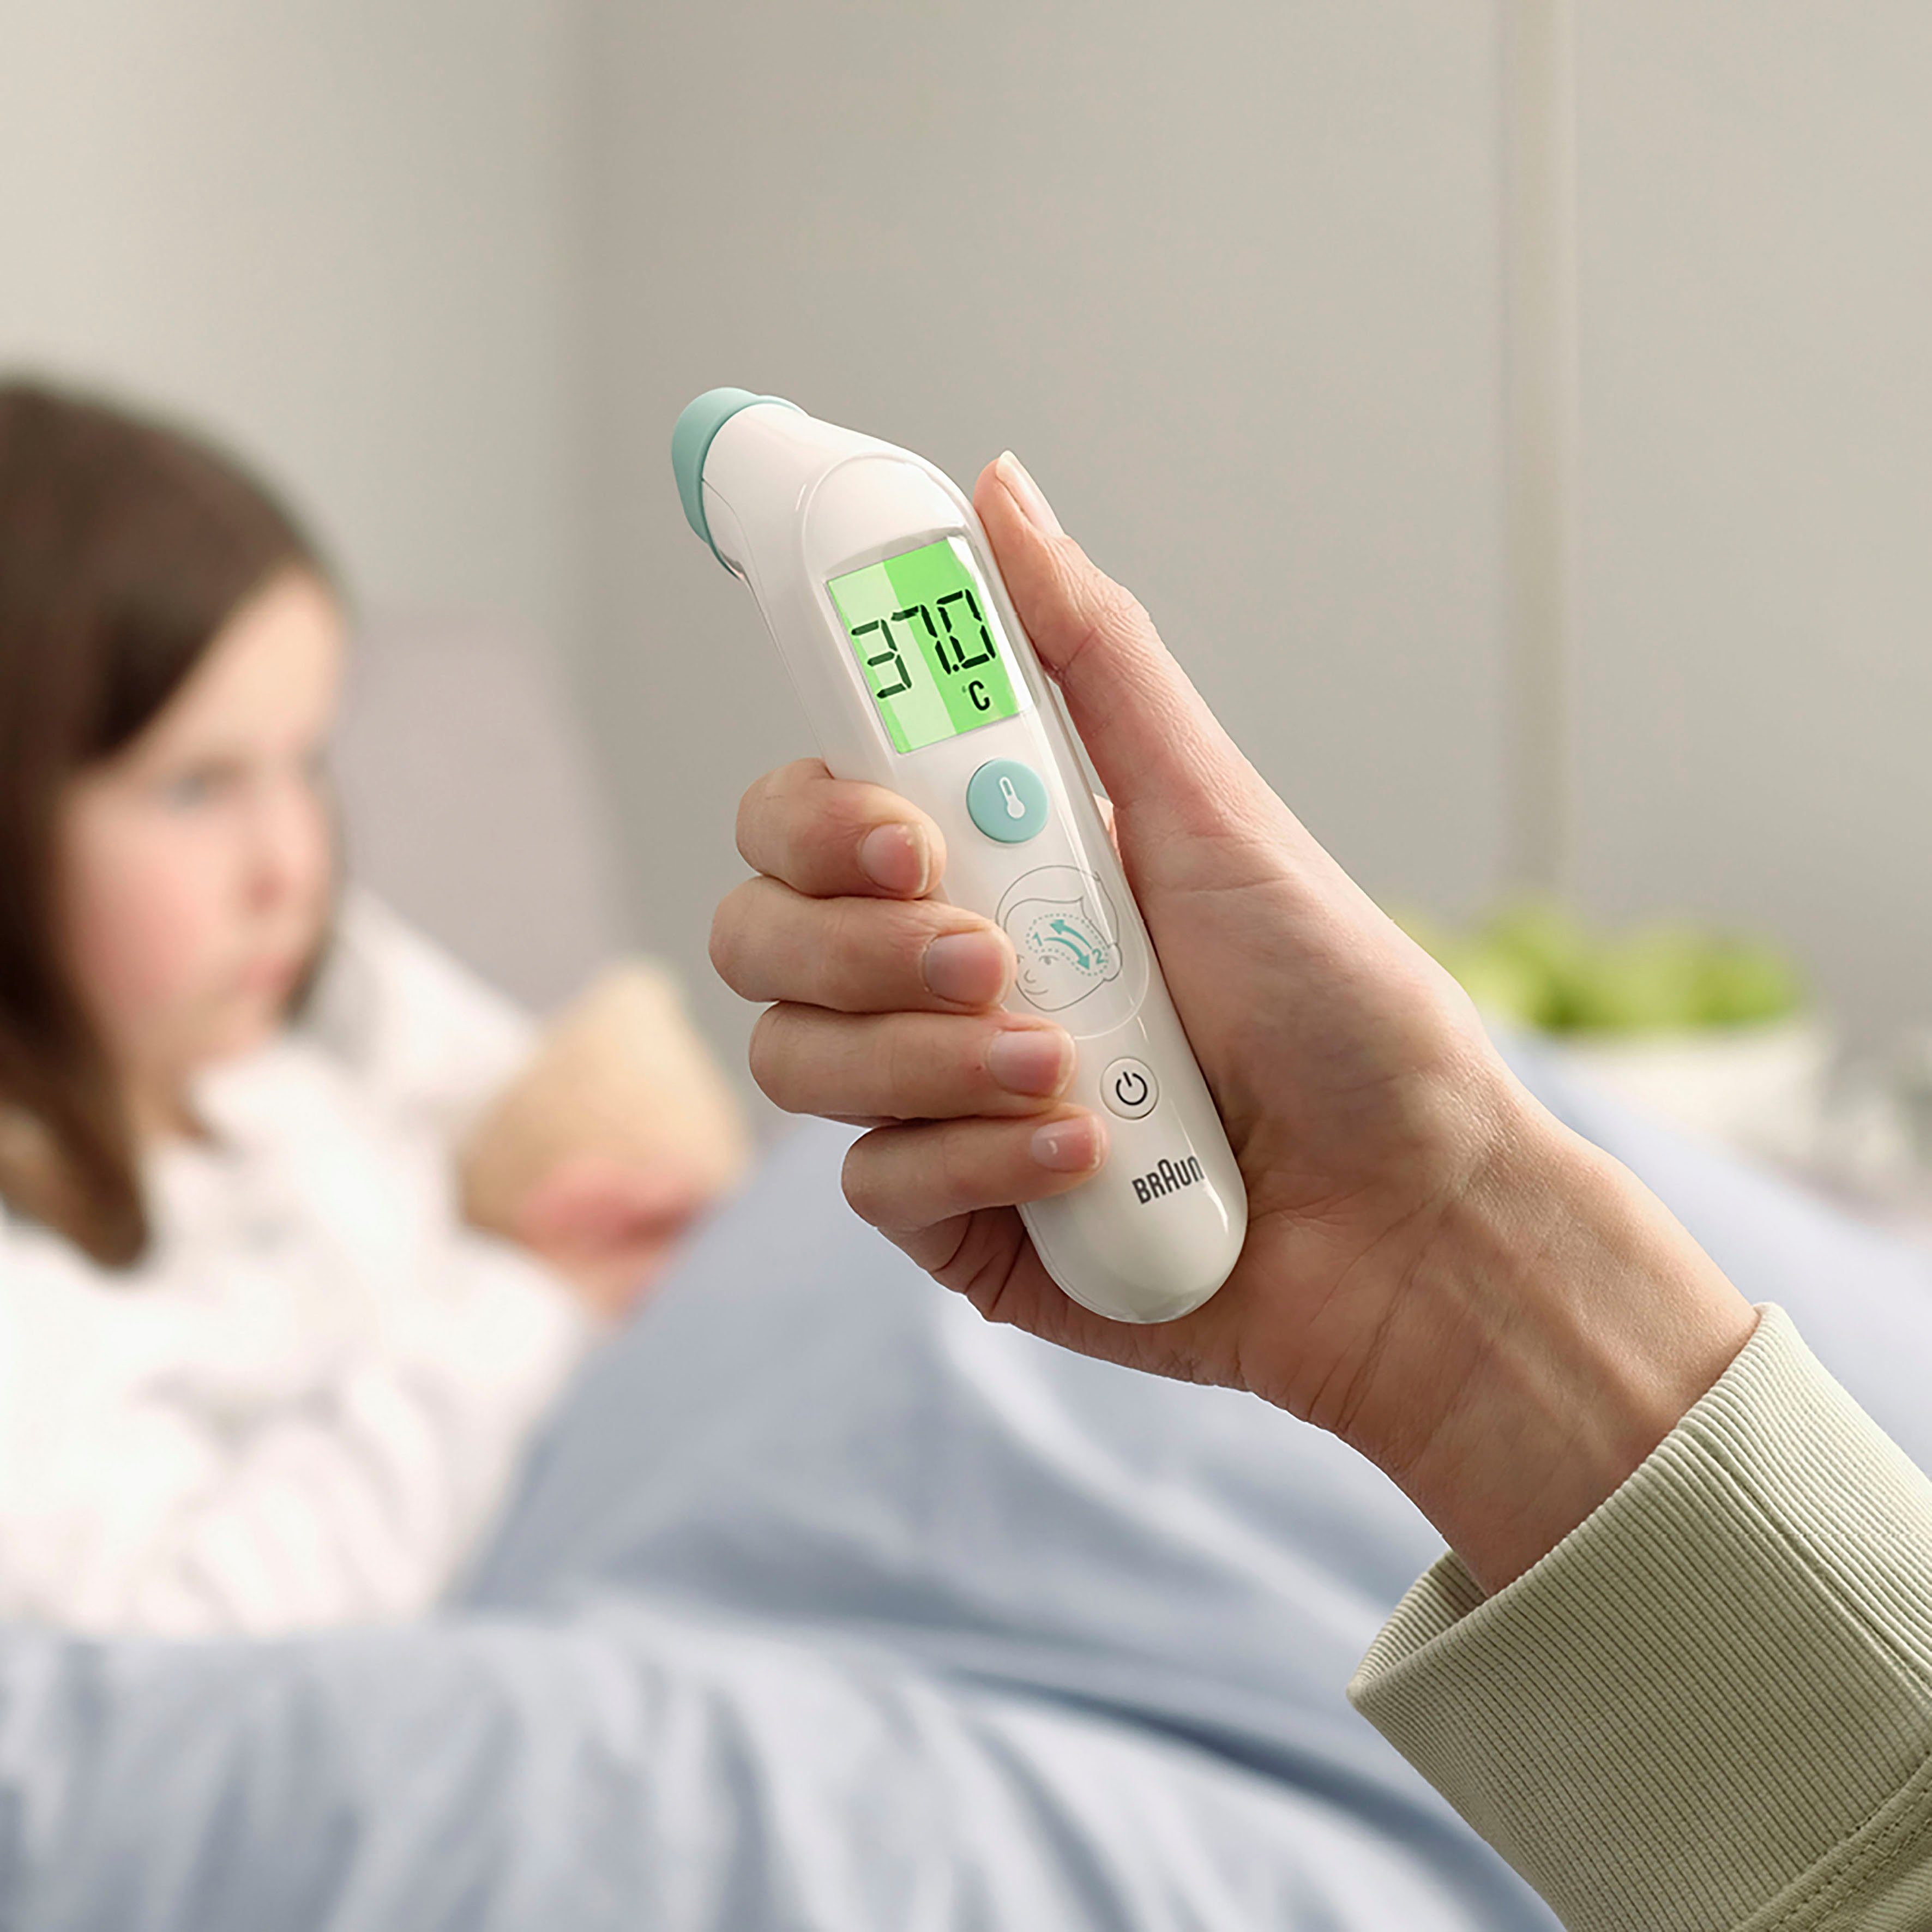 Braun Fieberthermometer TempleSwipe™ Altersgruppen​: - Erwachsene Geeignet Kinder Säuglinge, Stirnthermometer​ und BST200, alle für